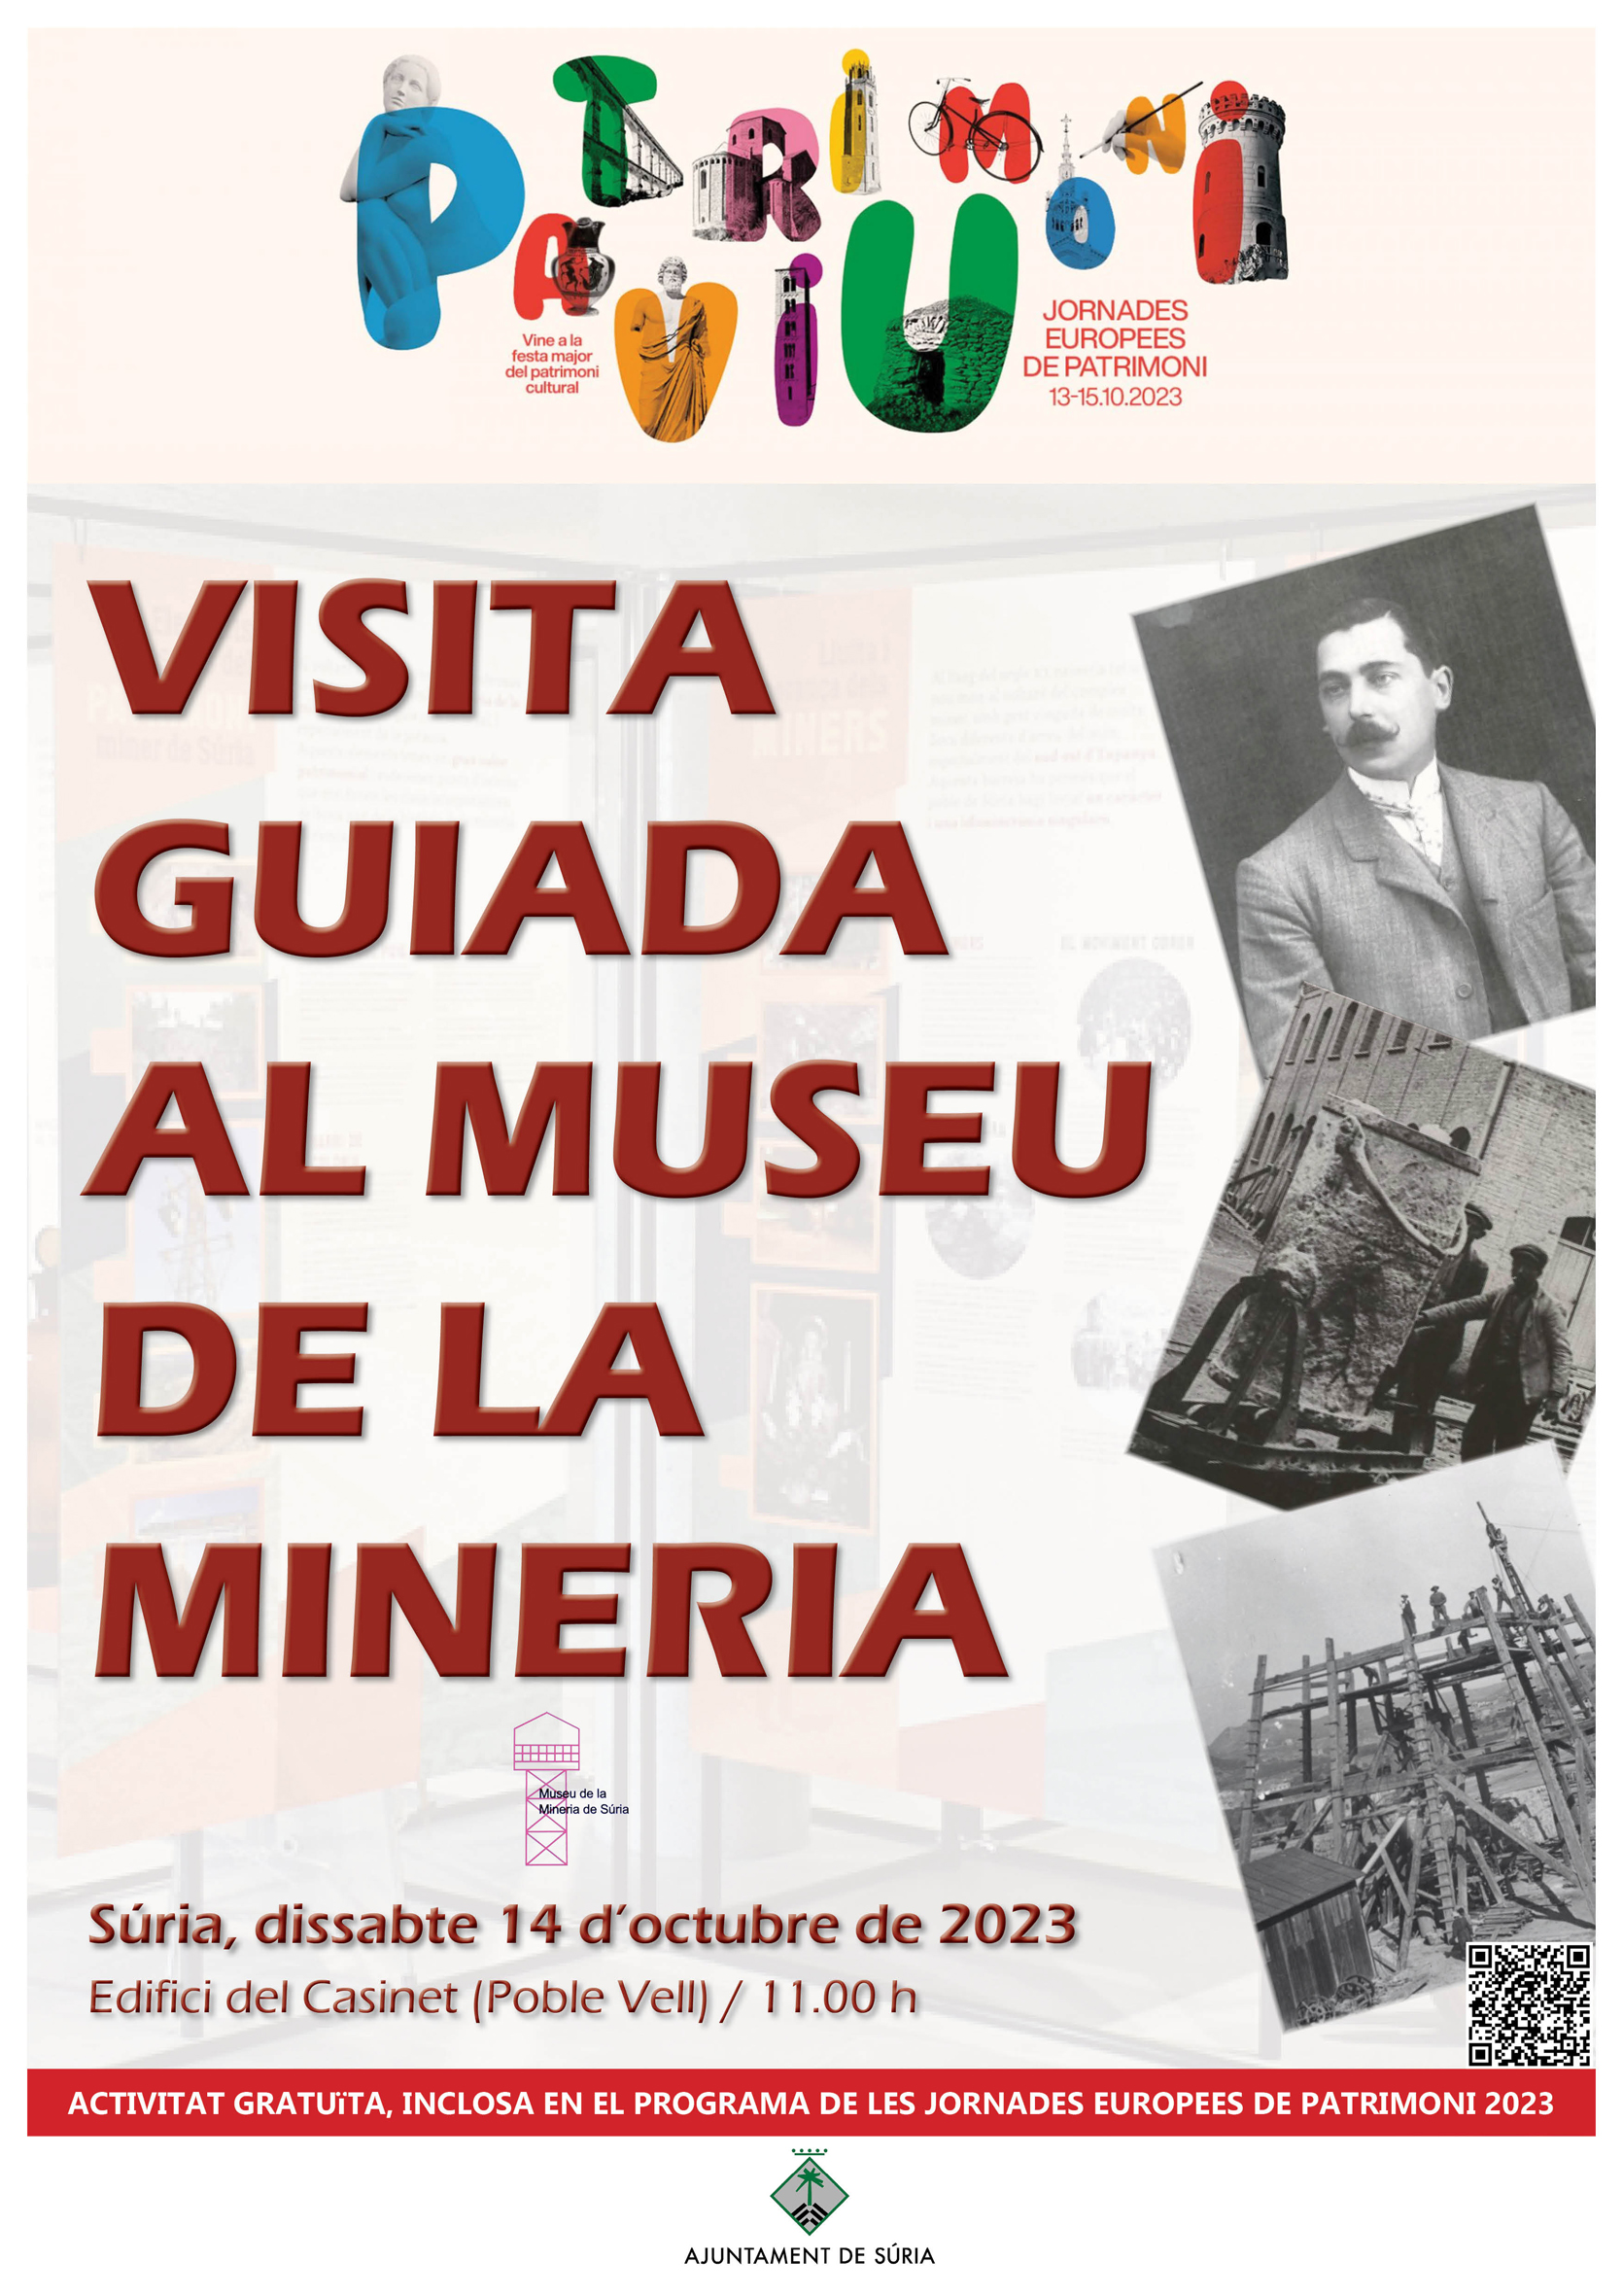 Jornades Europees de Patrimoni: Visita guiada al Museu de la Mineria